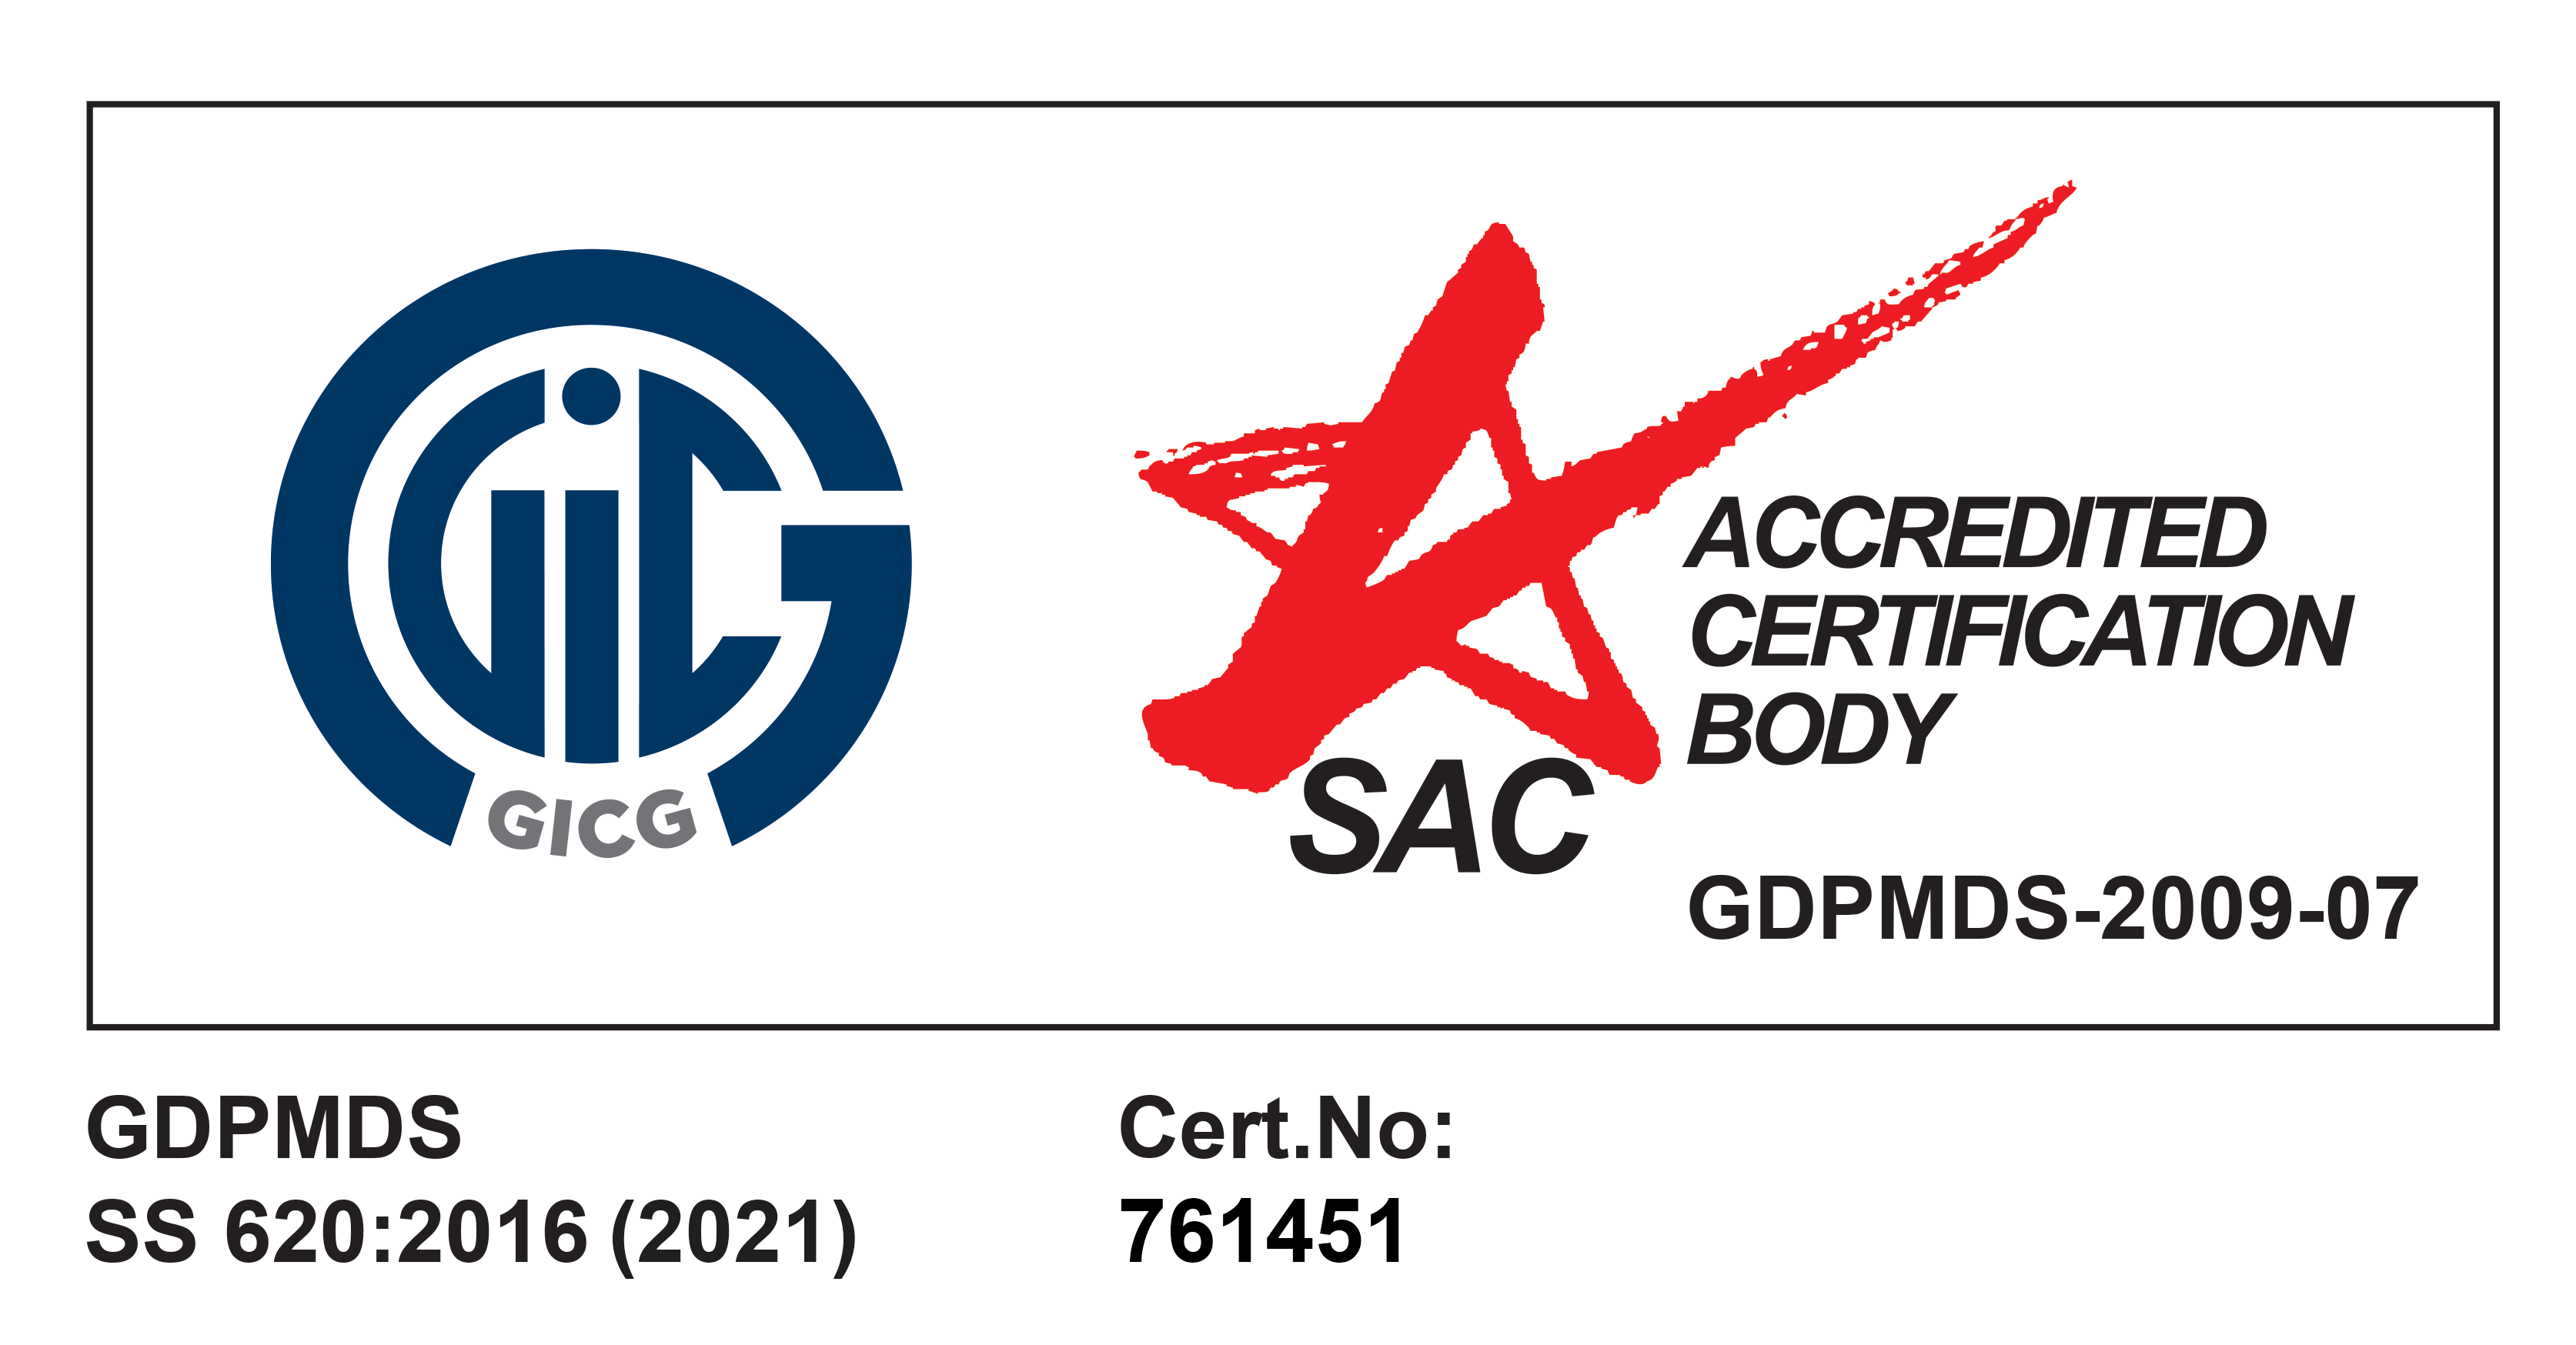 GICG accreditation